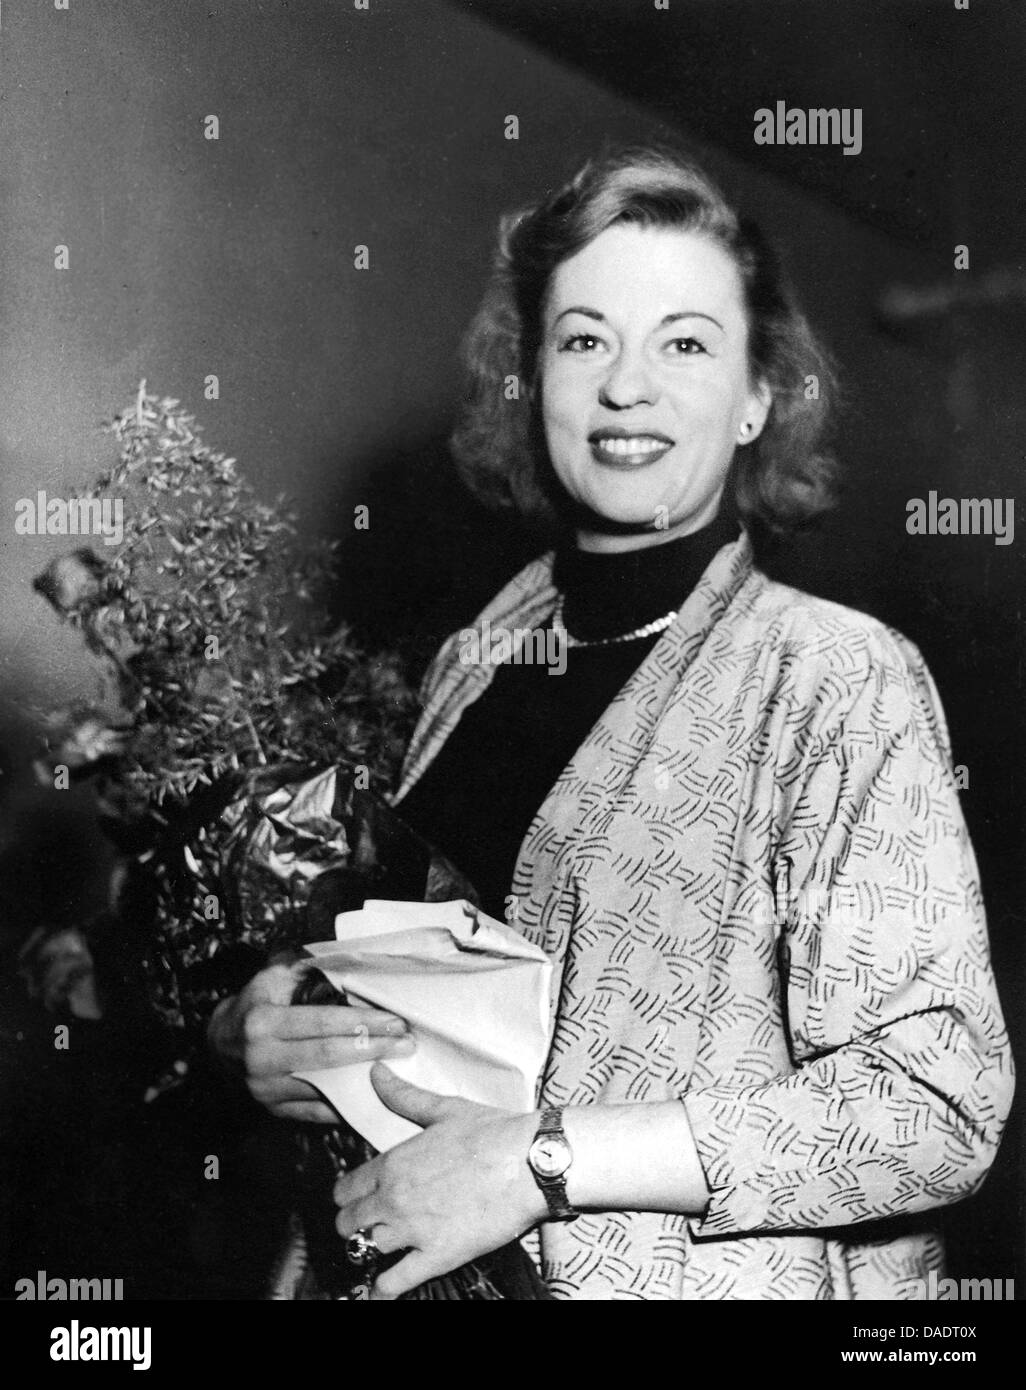 L'attrice Uta Hagen nel 1954. Ritratto dal fotografo Fred Stein (1909-1967) che emigrarono 1933 dalla Germania nazista per la Francia e infine negli Stati Uniti. Foto Stock